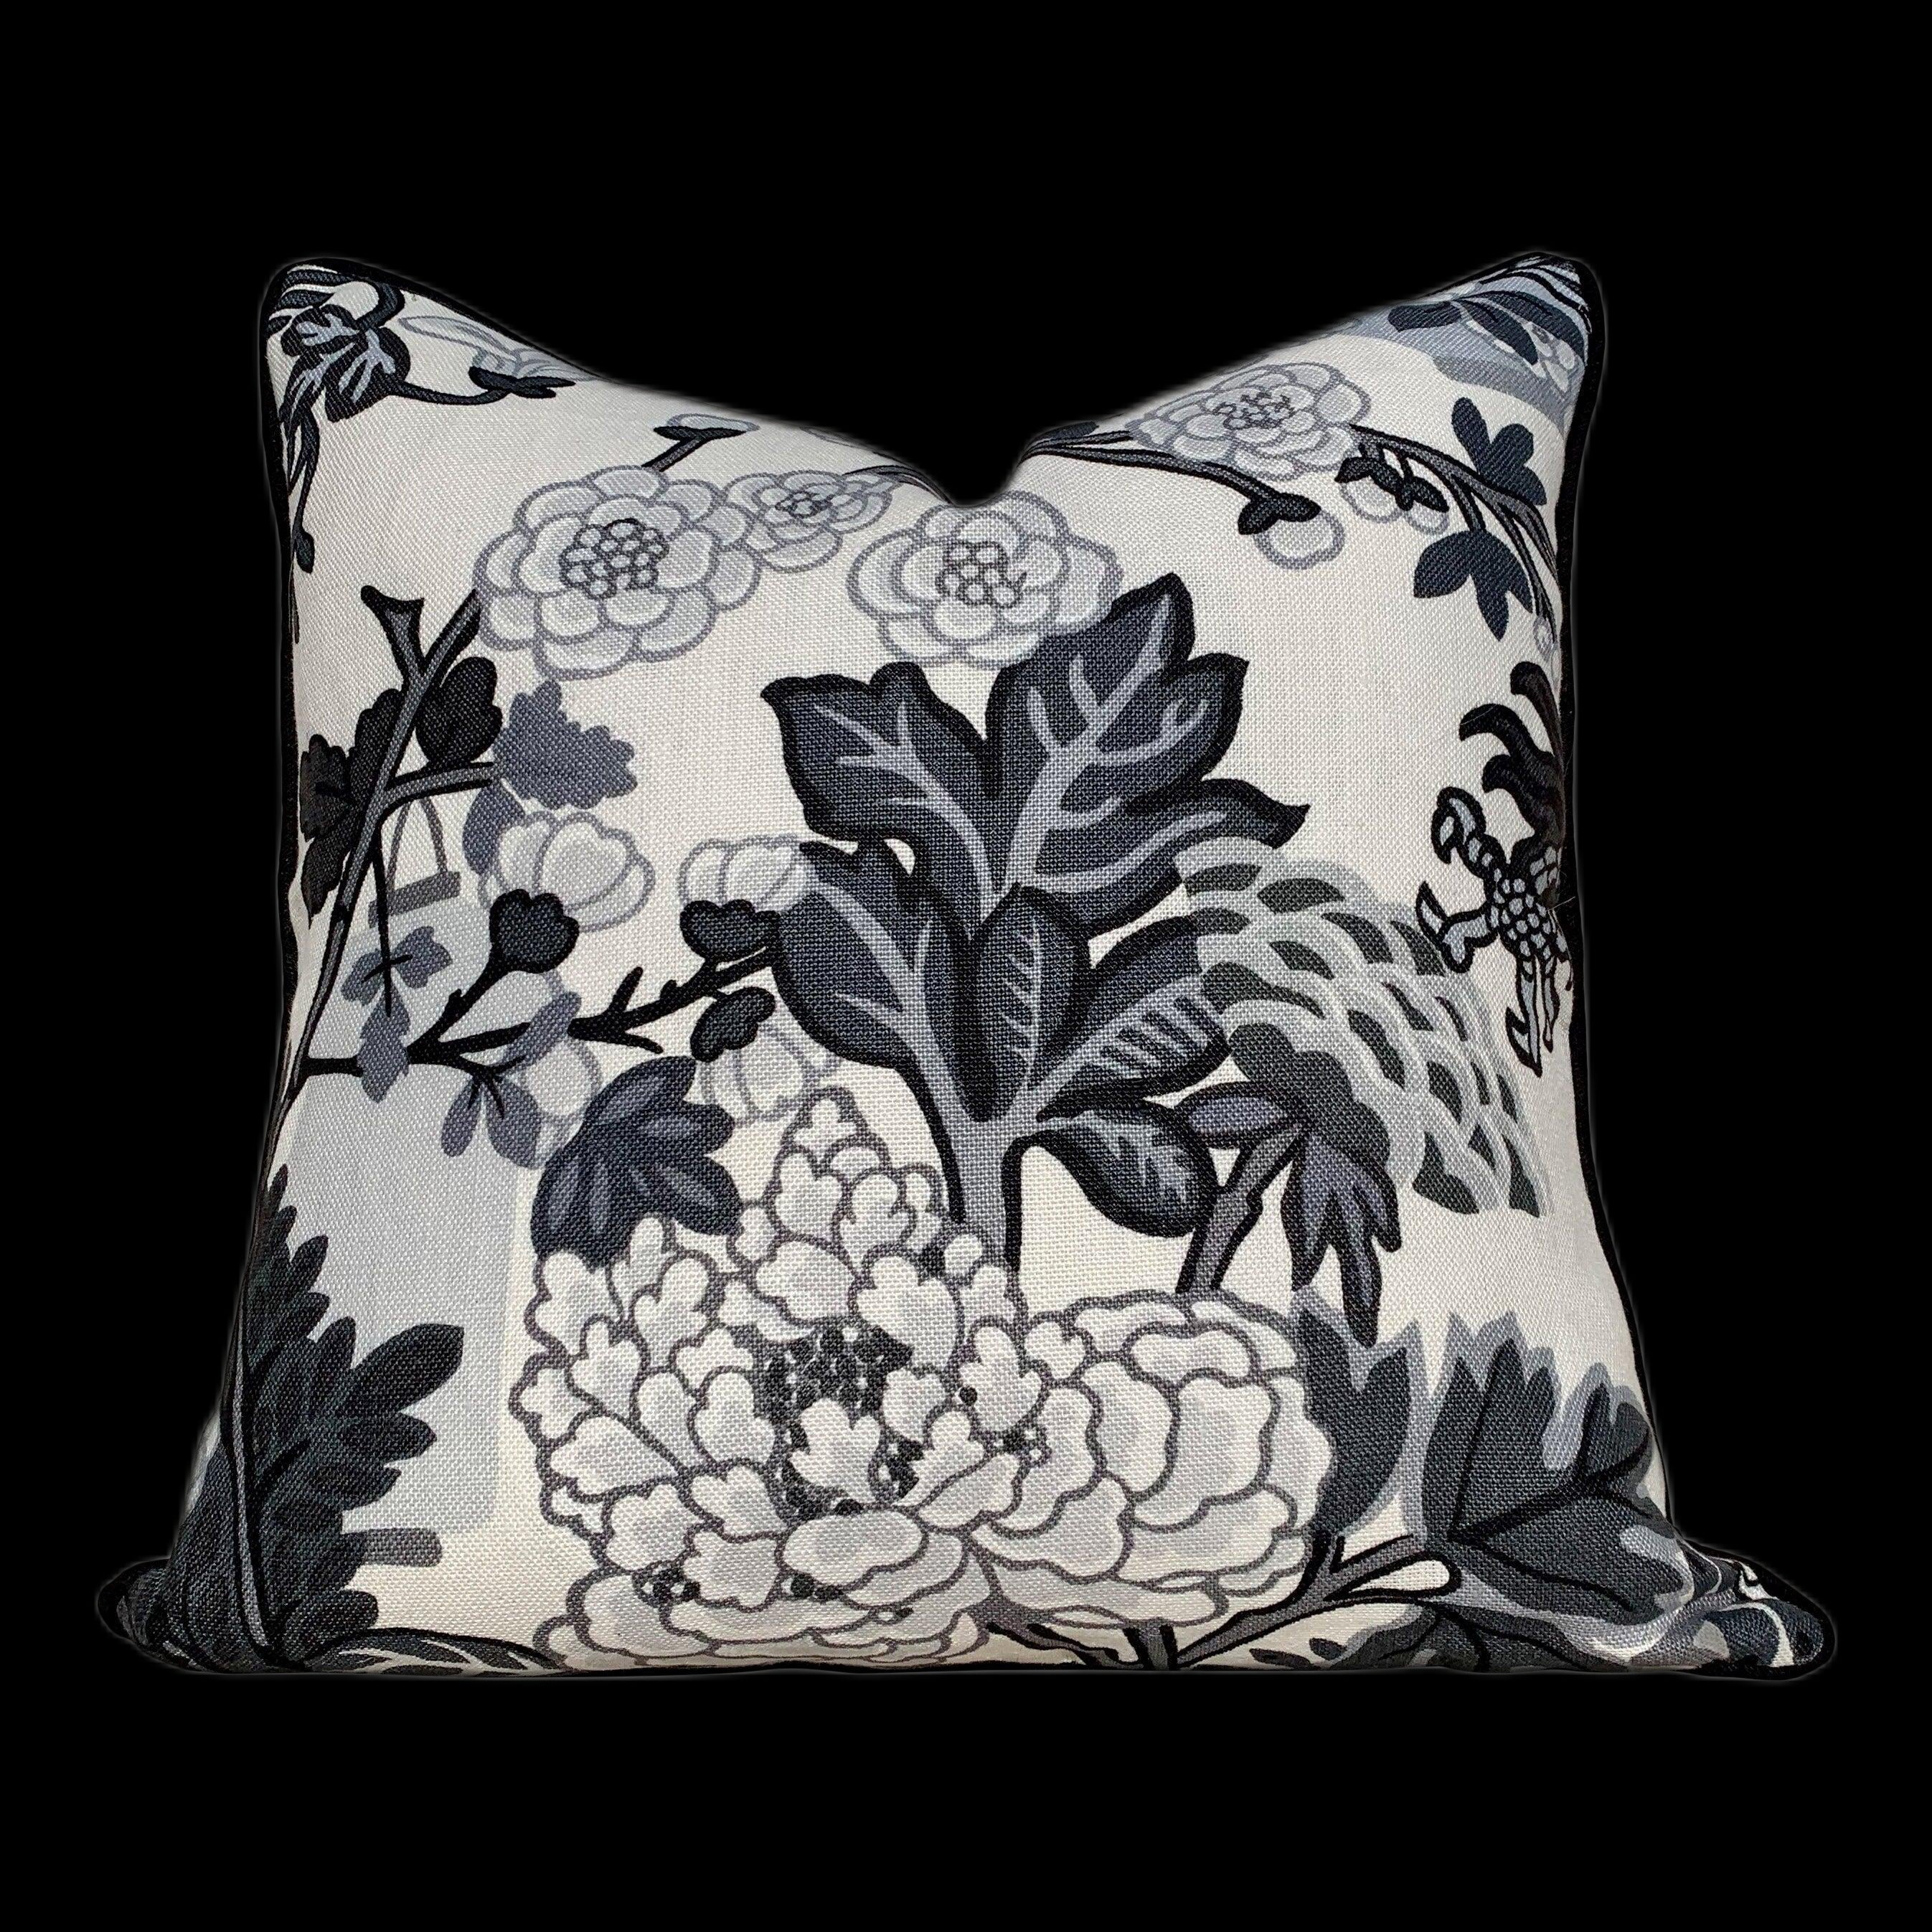 Chiang Mai Dragon Linen Accent Pillow in Smoke. Lumbar Dragon Cushion Cover. Schumacher Decorative Pillow, accent cushion cover